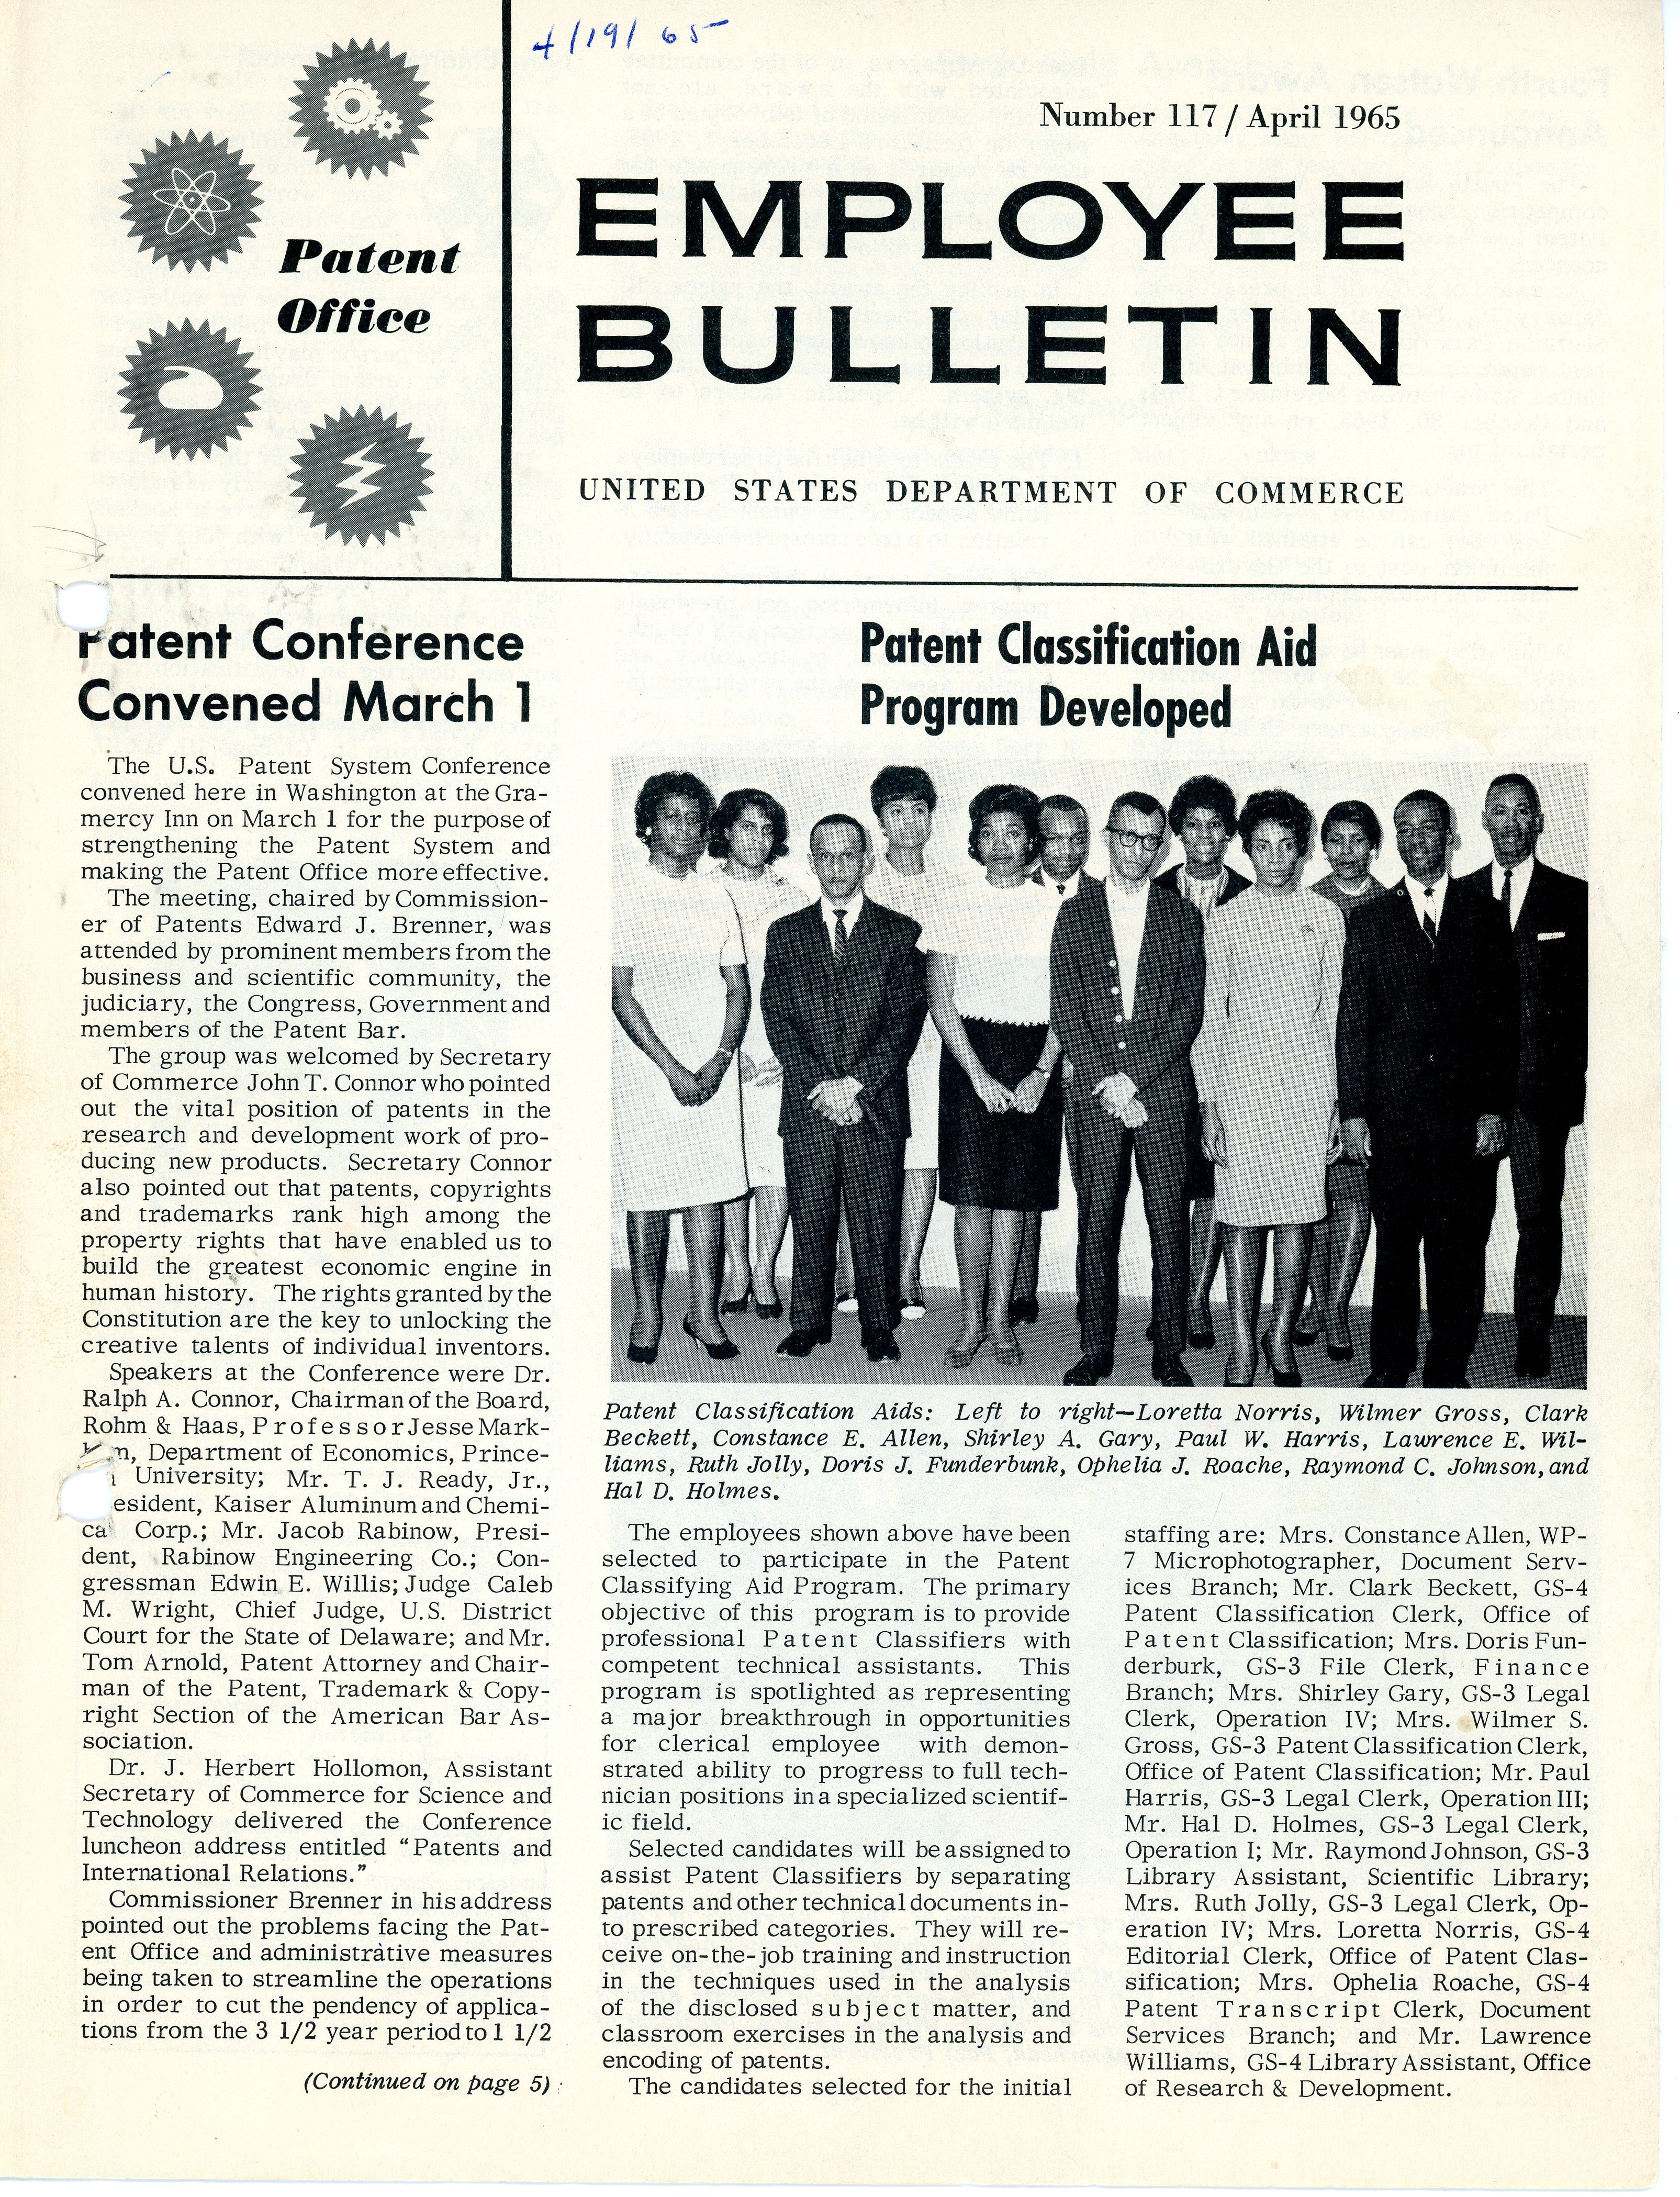 Employee Bulletin